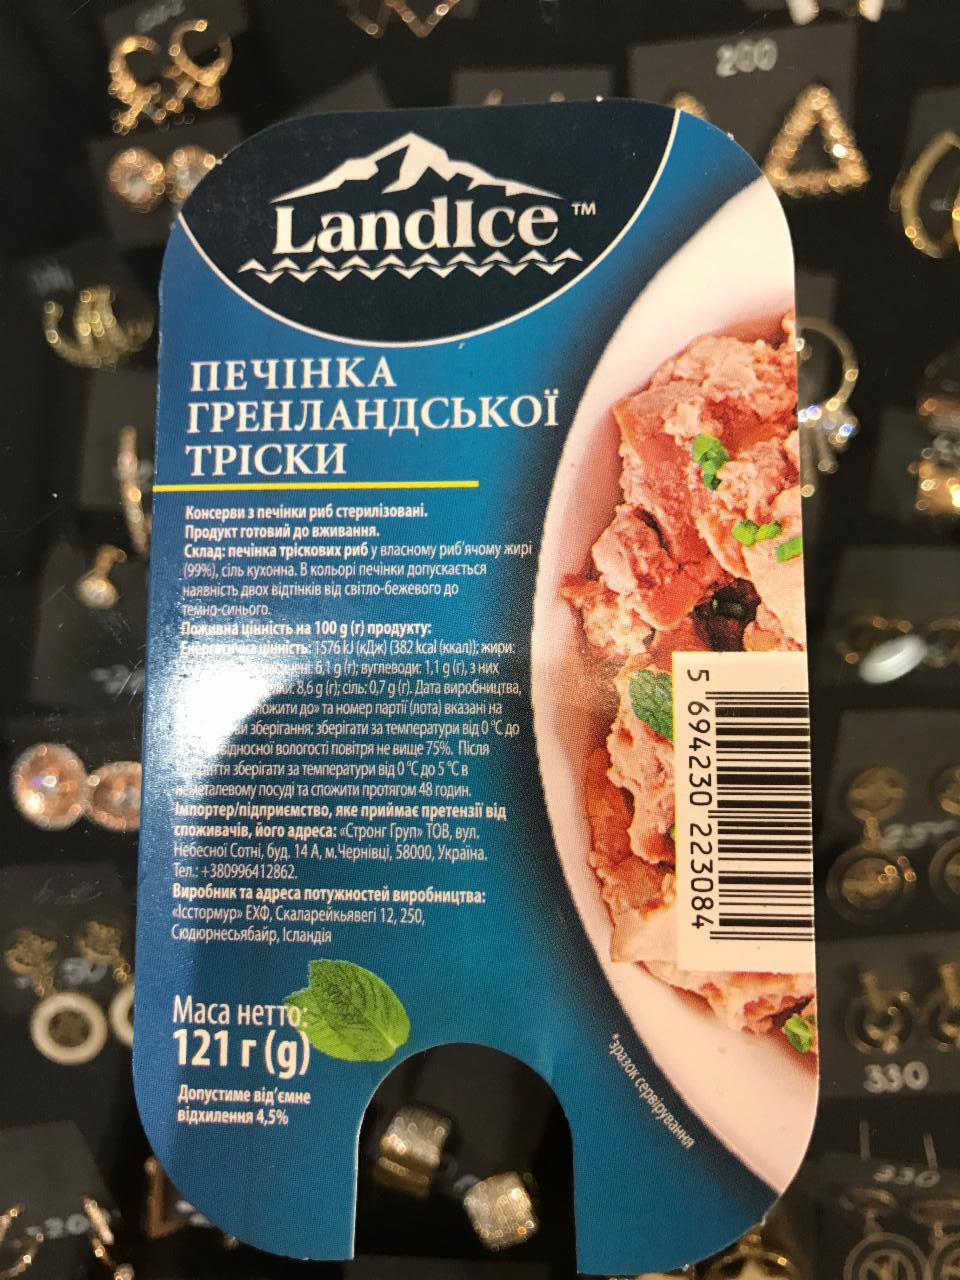 Фото - печень гренландской трески Landice